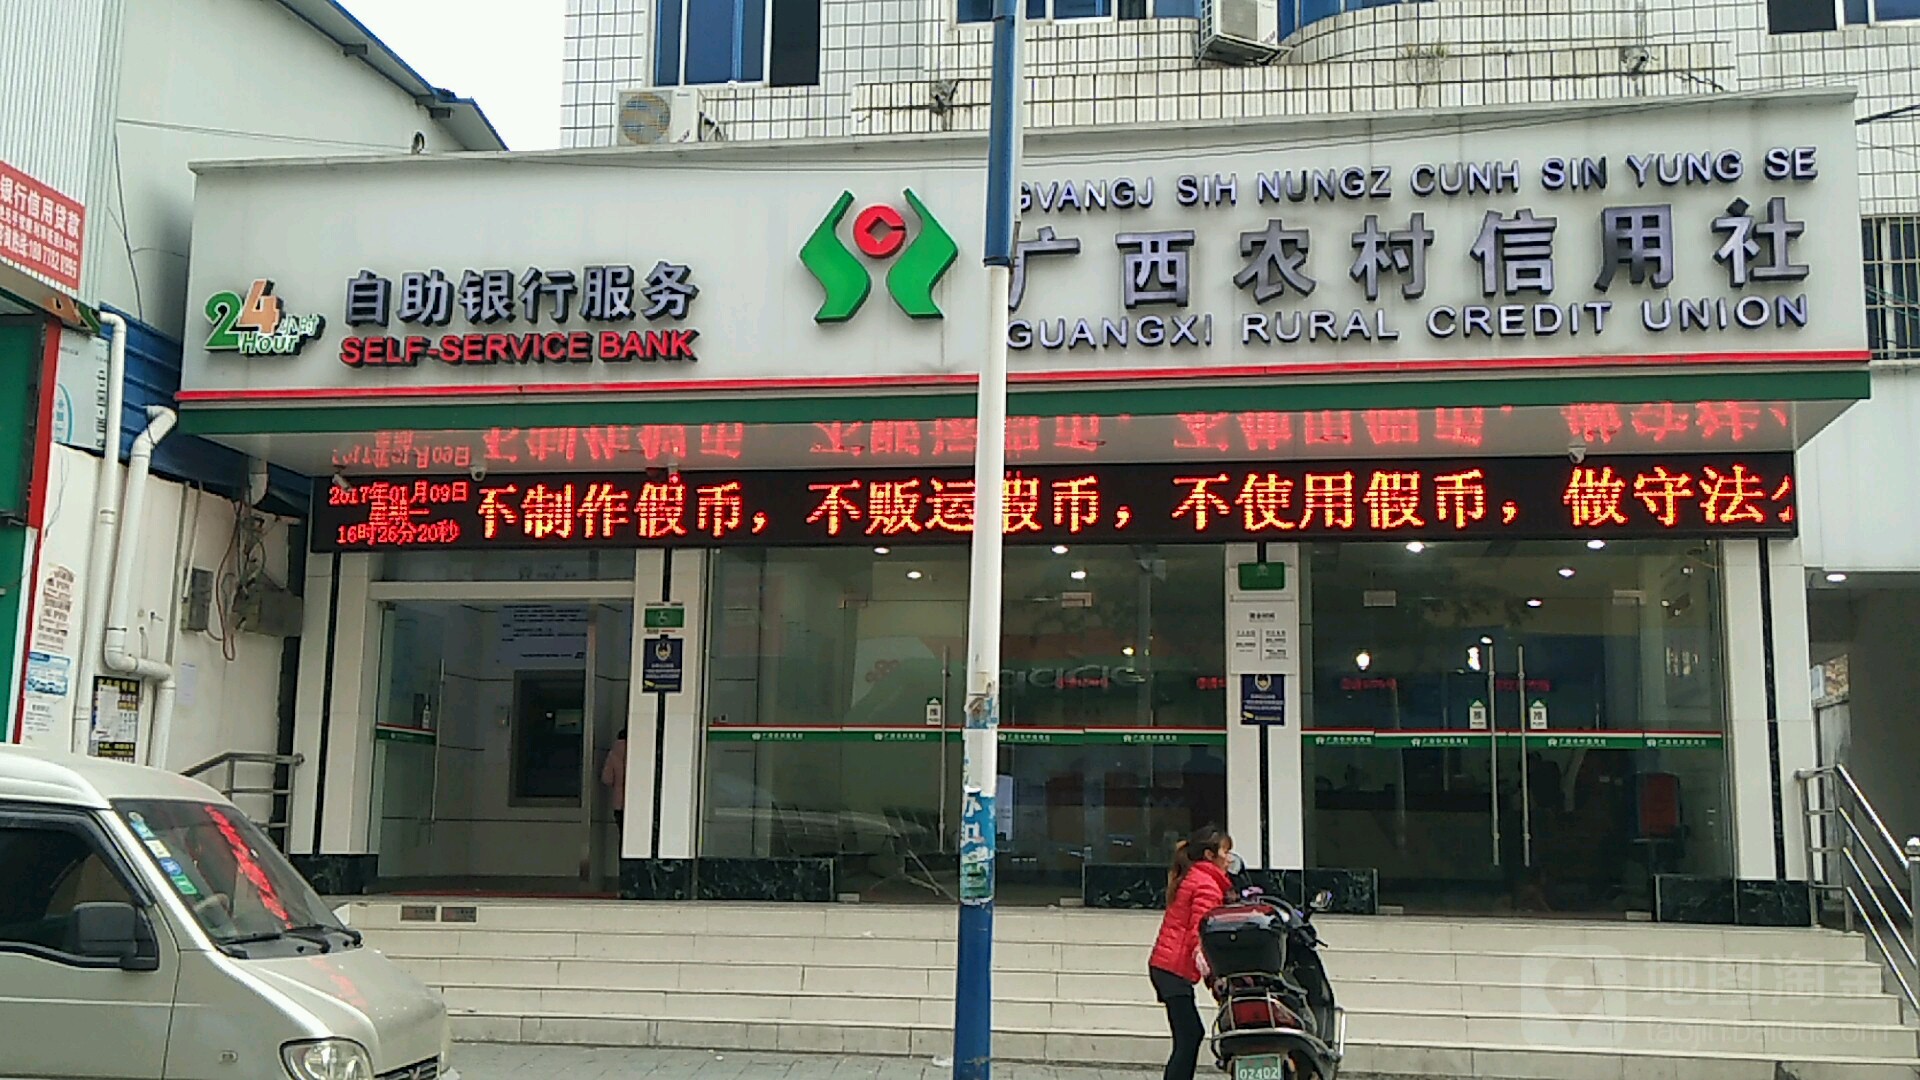 广西农村信用社24小时自助银行服务